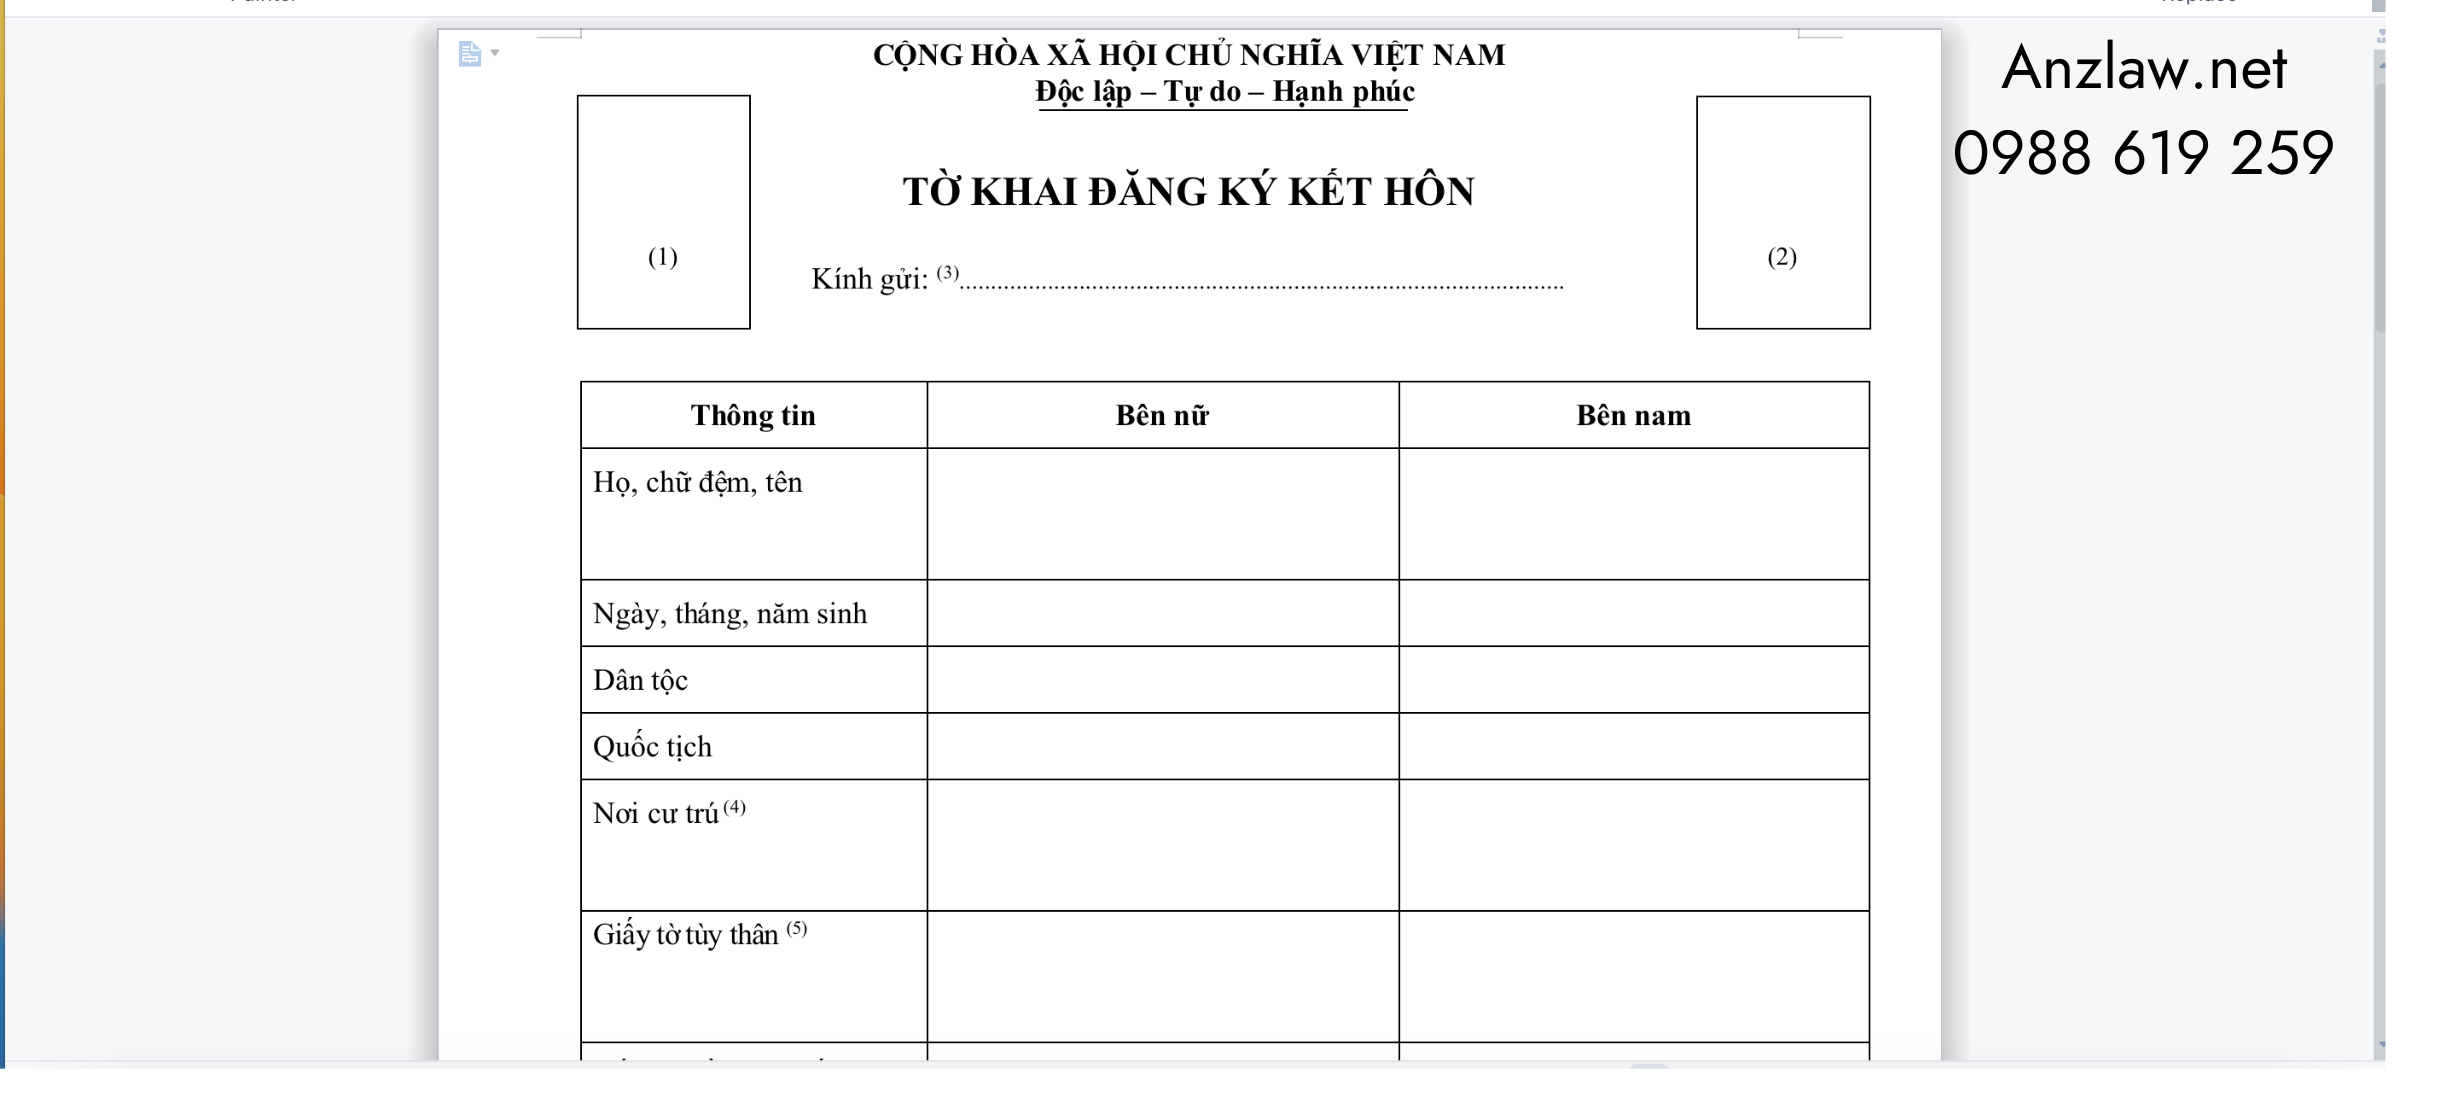 Tờ khai đăng ký kết hôn | Thủ tục kết hôn với người Nhật tại Việt Nam